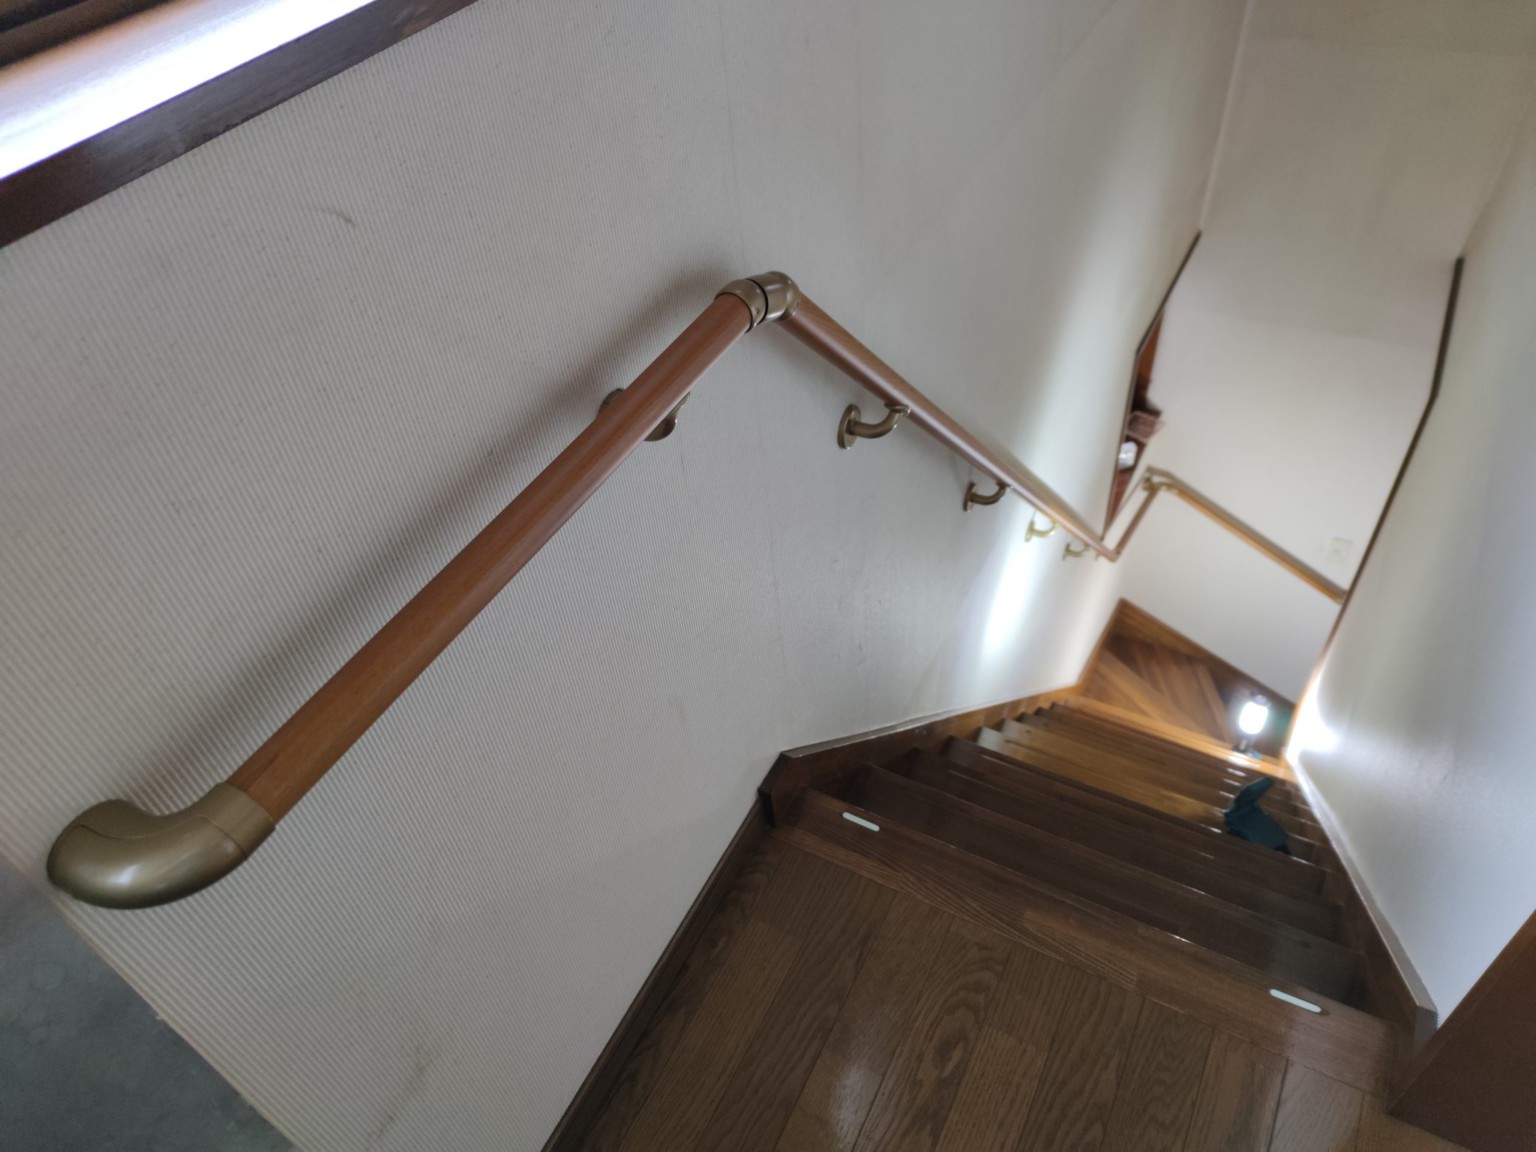 緑区原宿南のお客さま宅で階段手すりを設置してきました